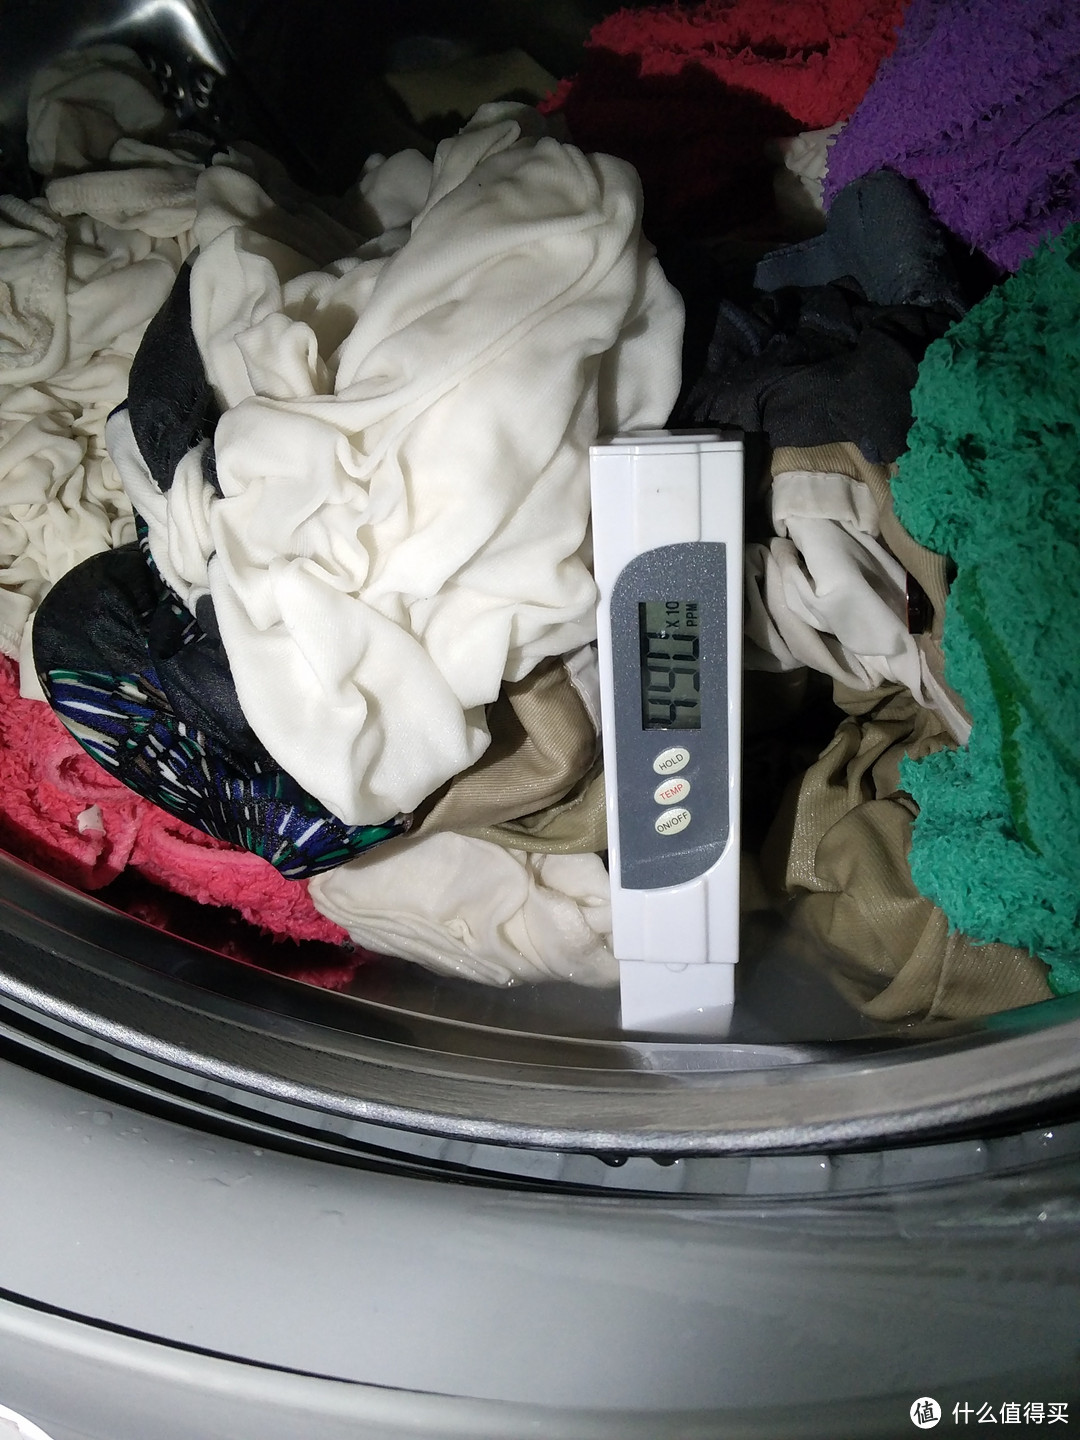 洗衣服的那点事----内衣专用洗衣粉--------看似一样却不一样